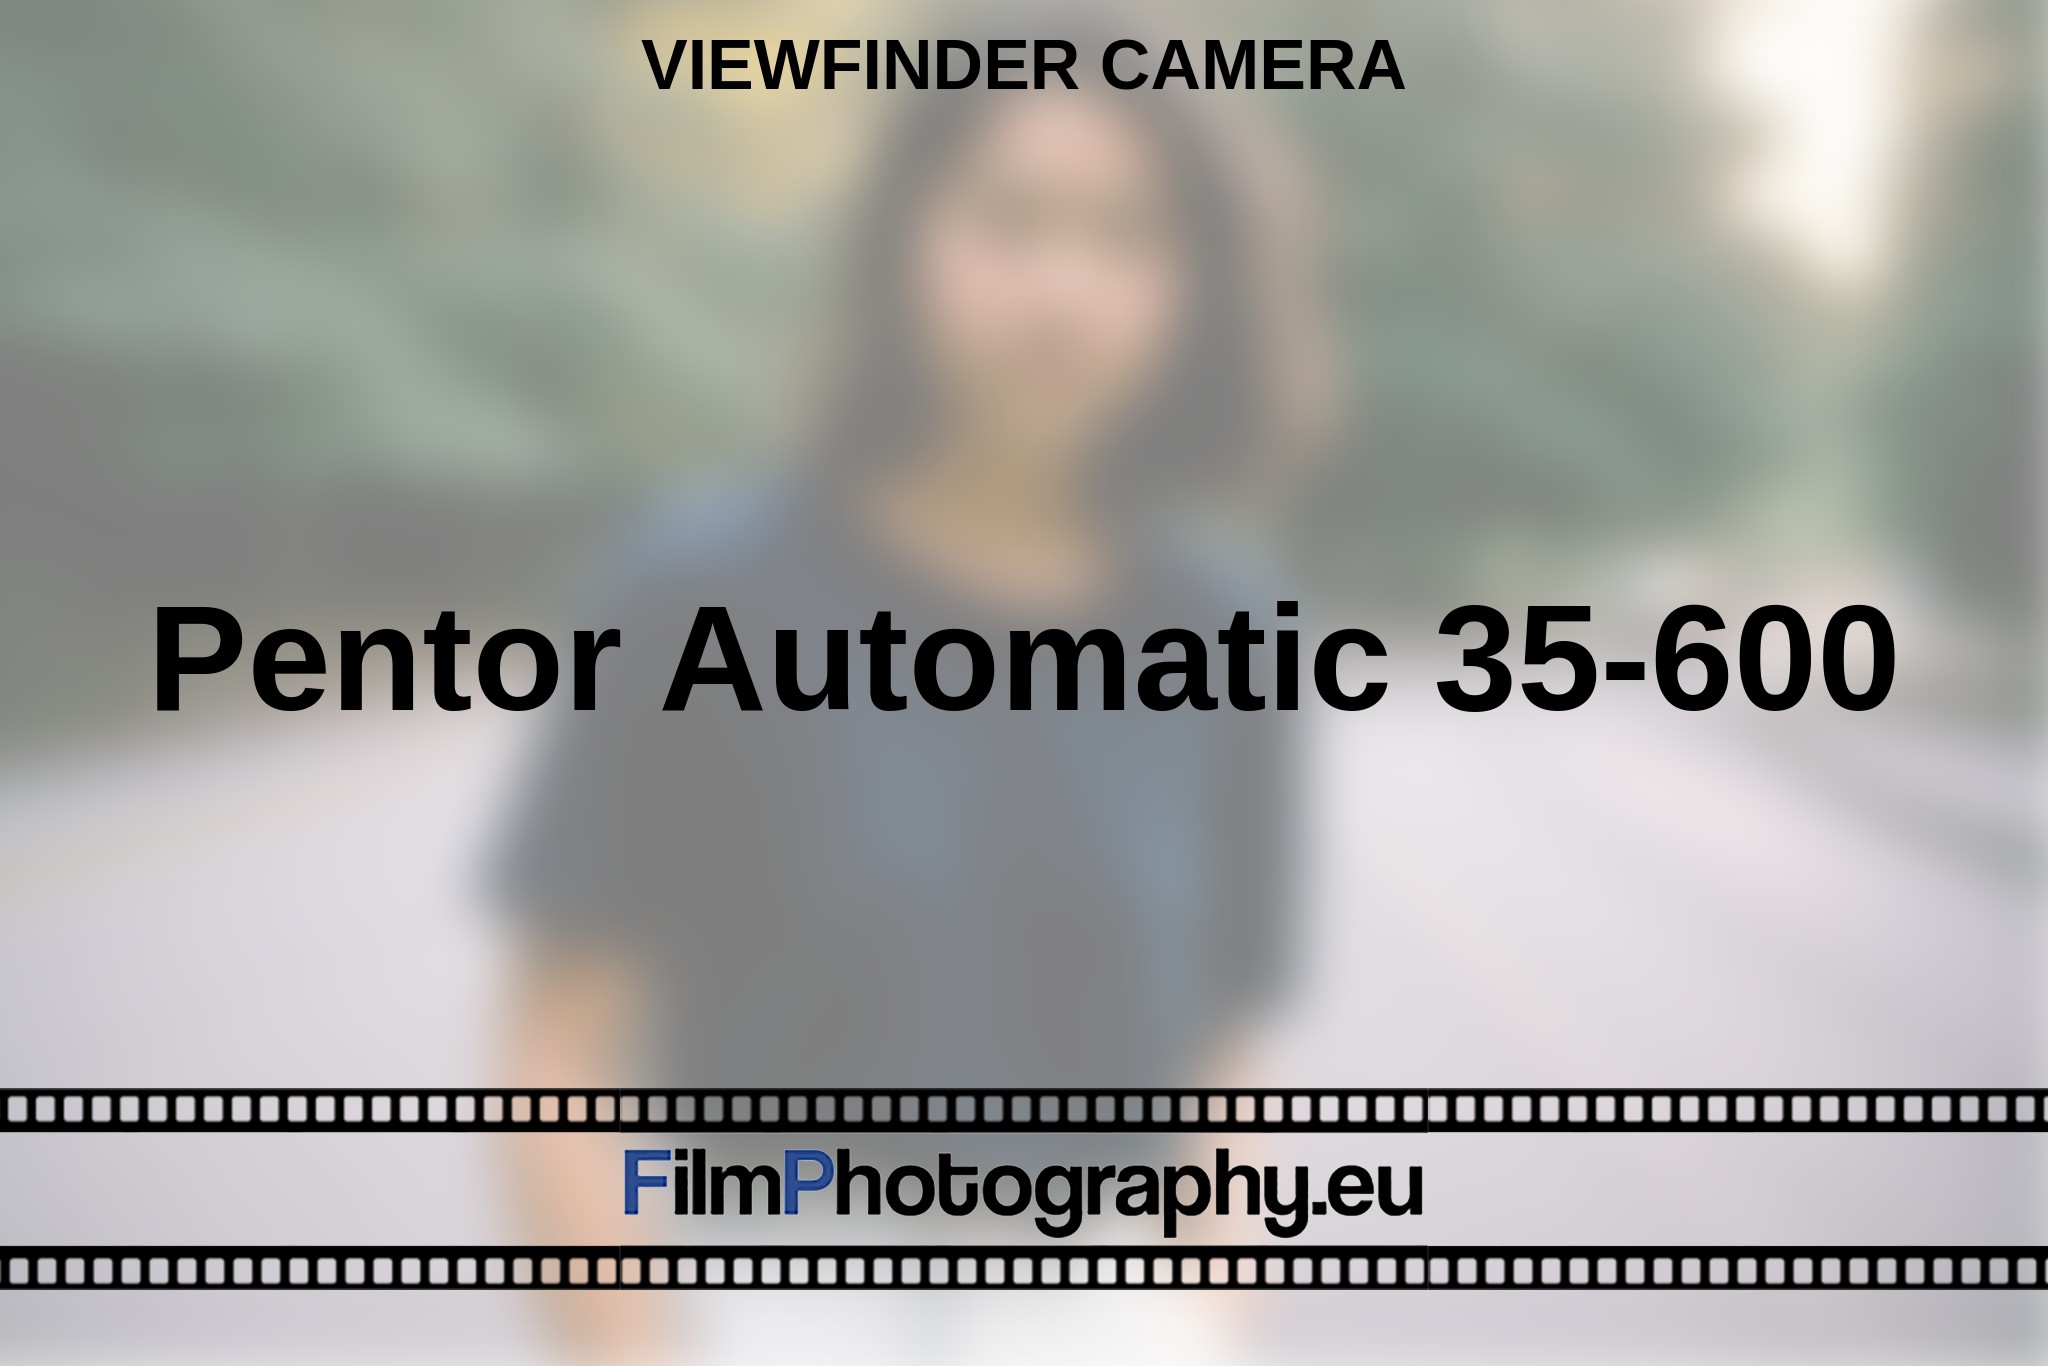 pentor-automatic-35-600-viewfinder-camera-en-bnv.jpg